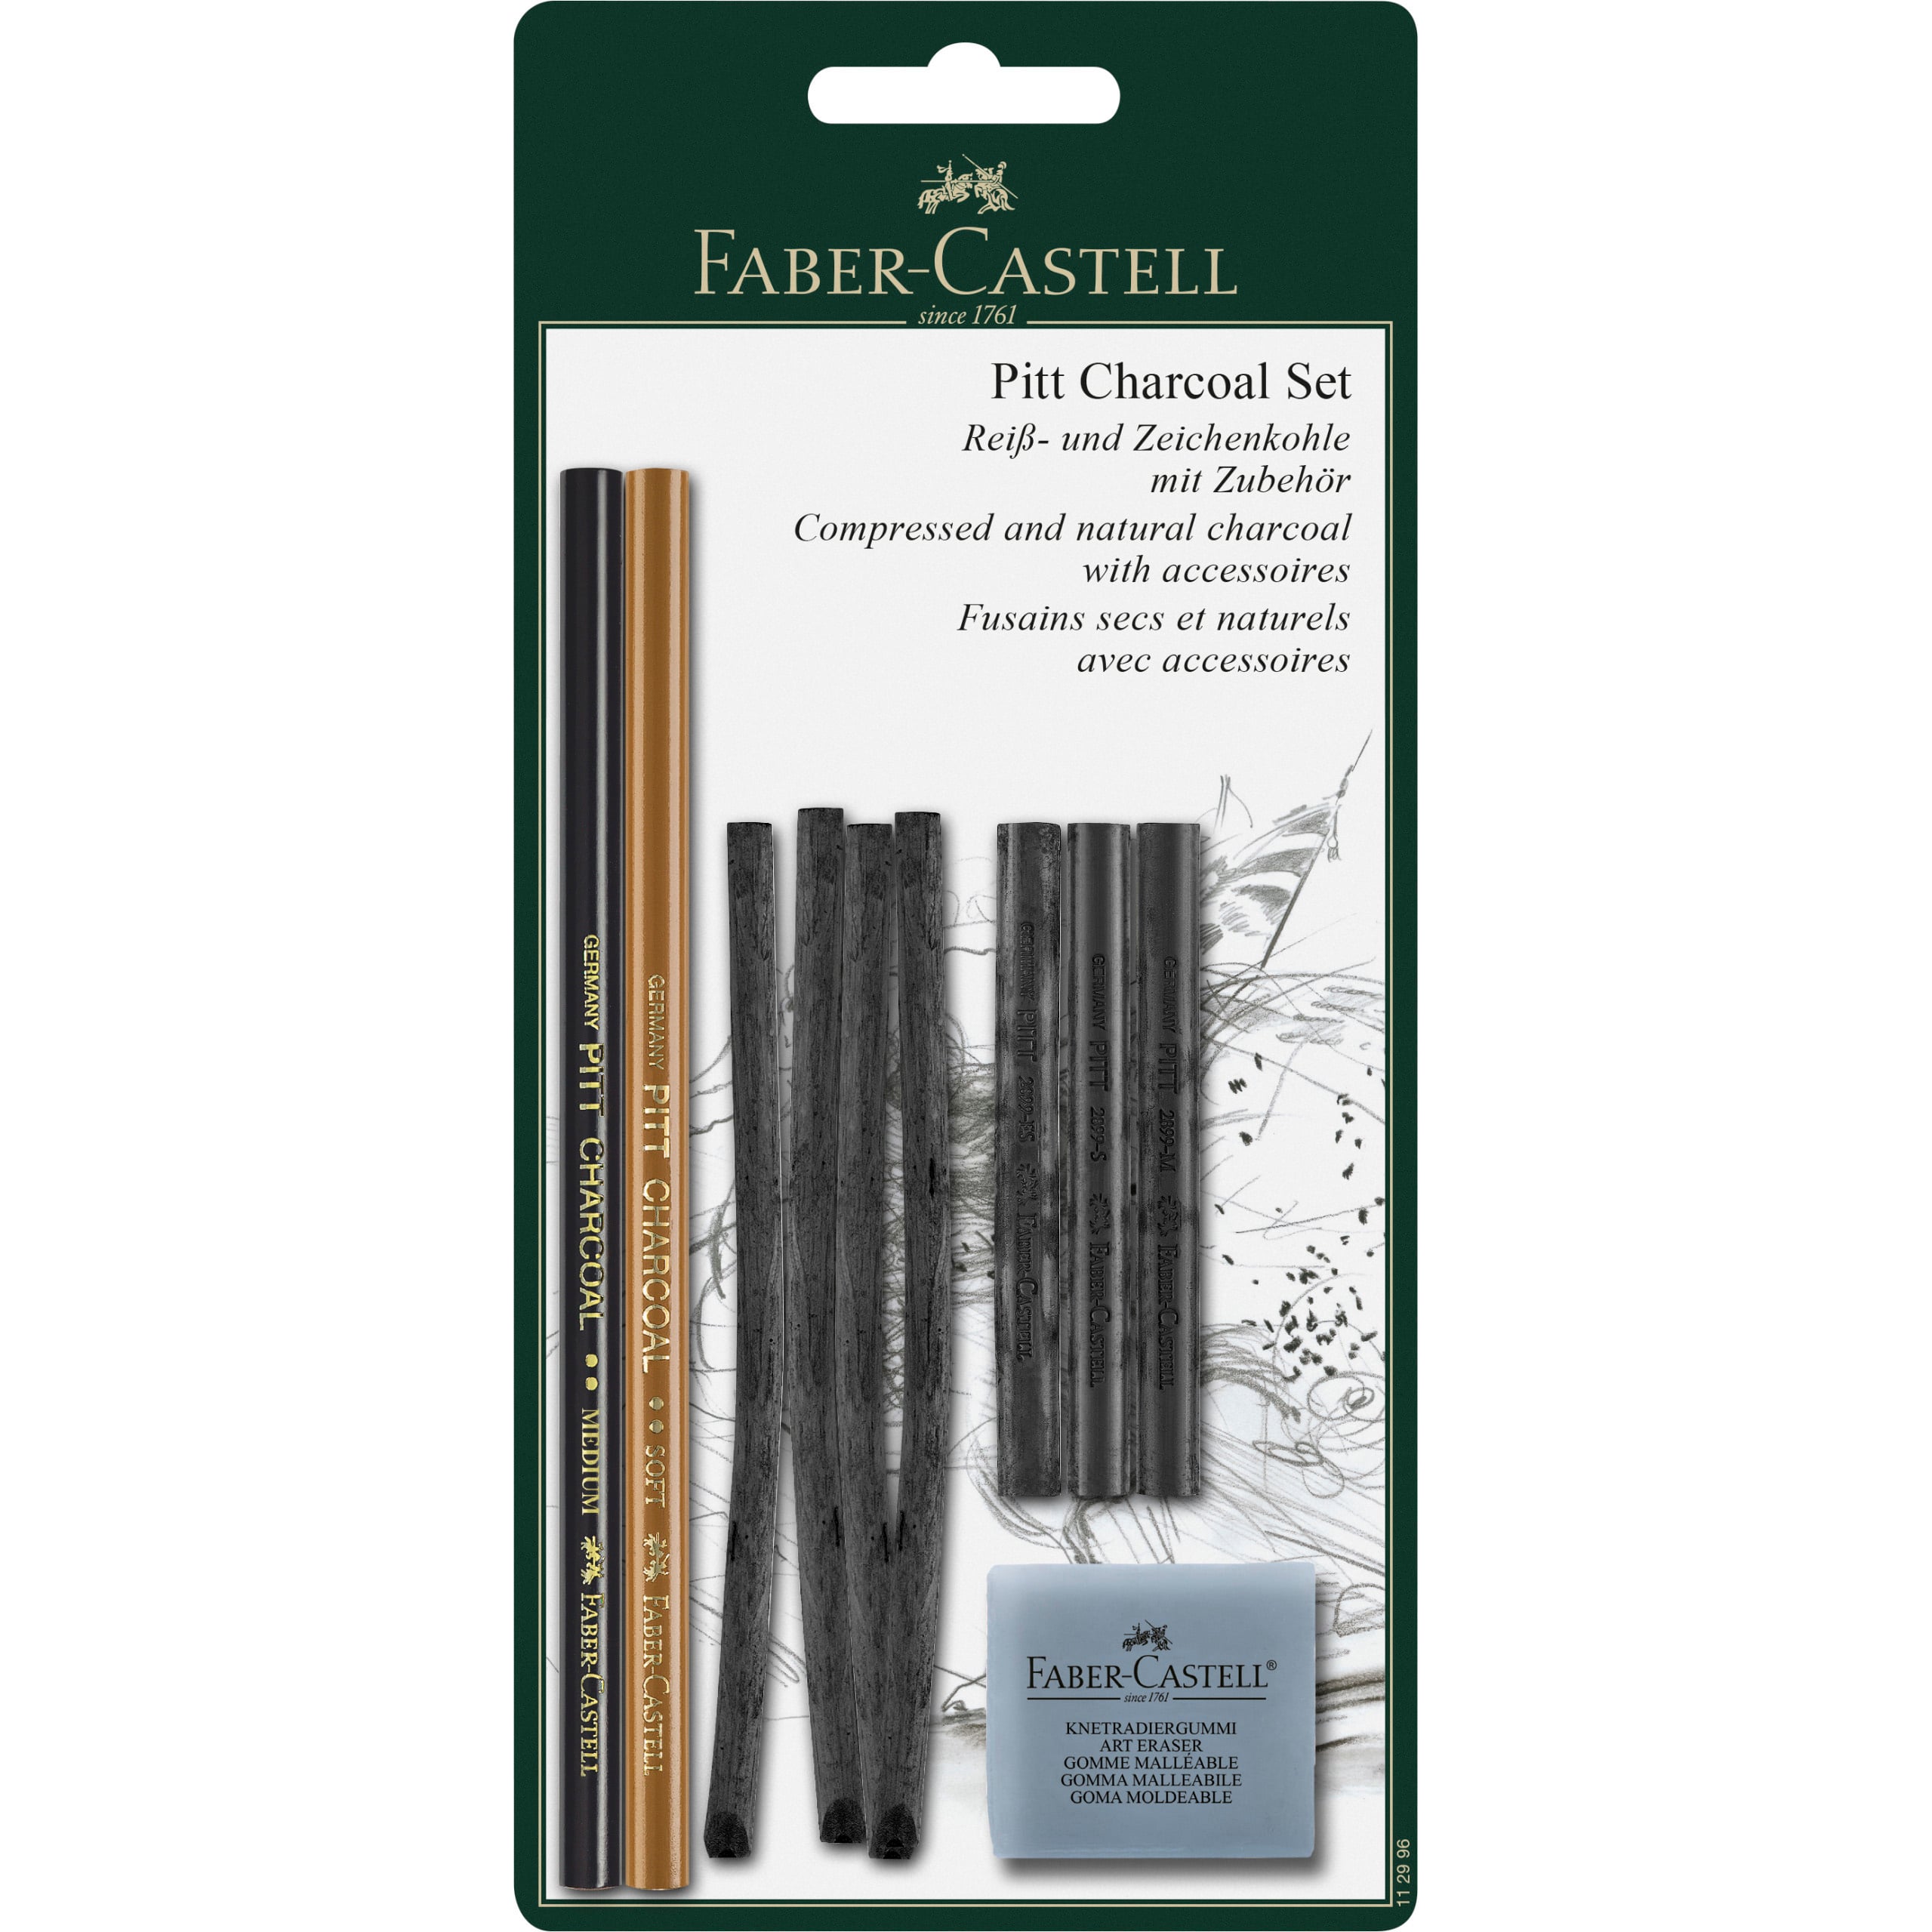 10 Pack: Faber-Castell&#xAE; 10 Piece Pitt Charcoal Set